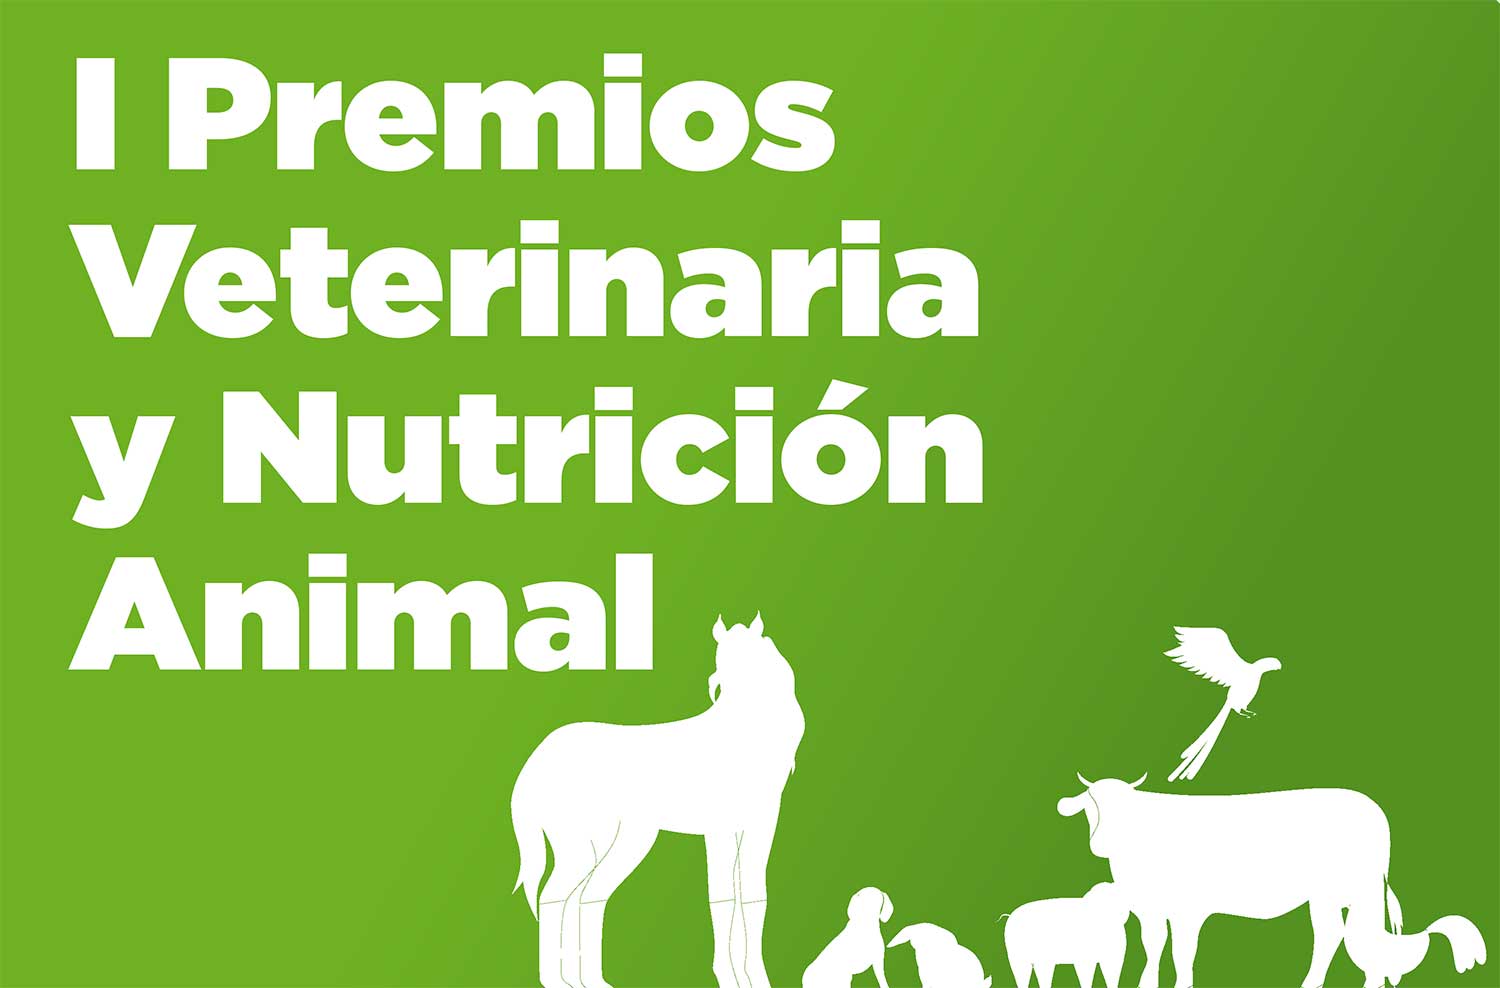 I Premios Veterinaria y Nutrición Animal - Guia de prensa